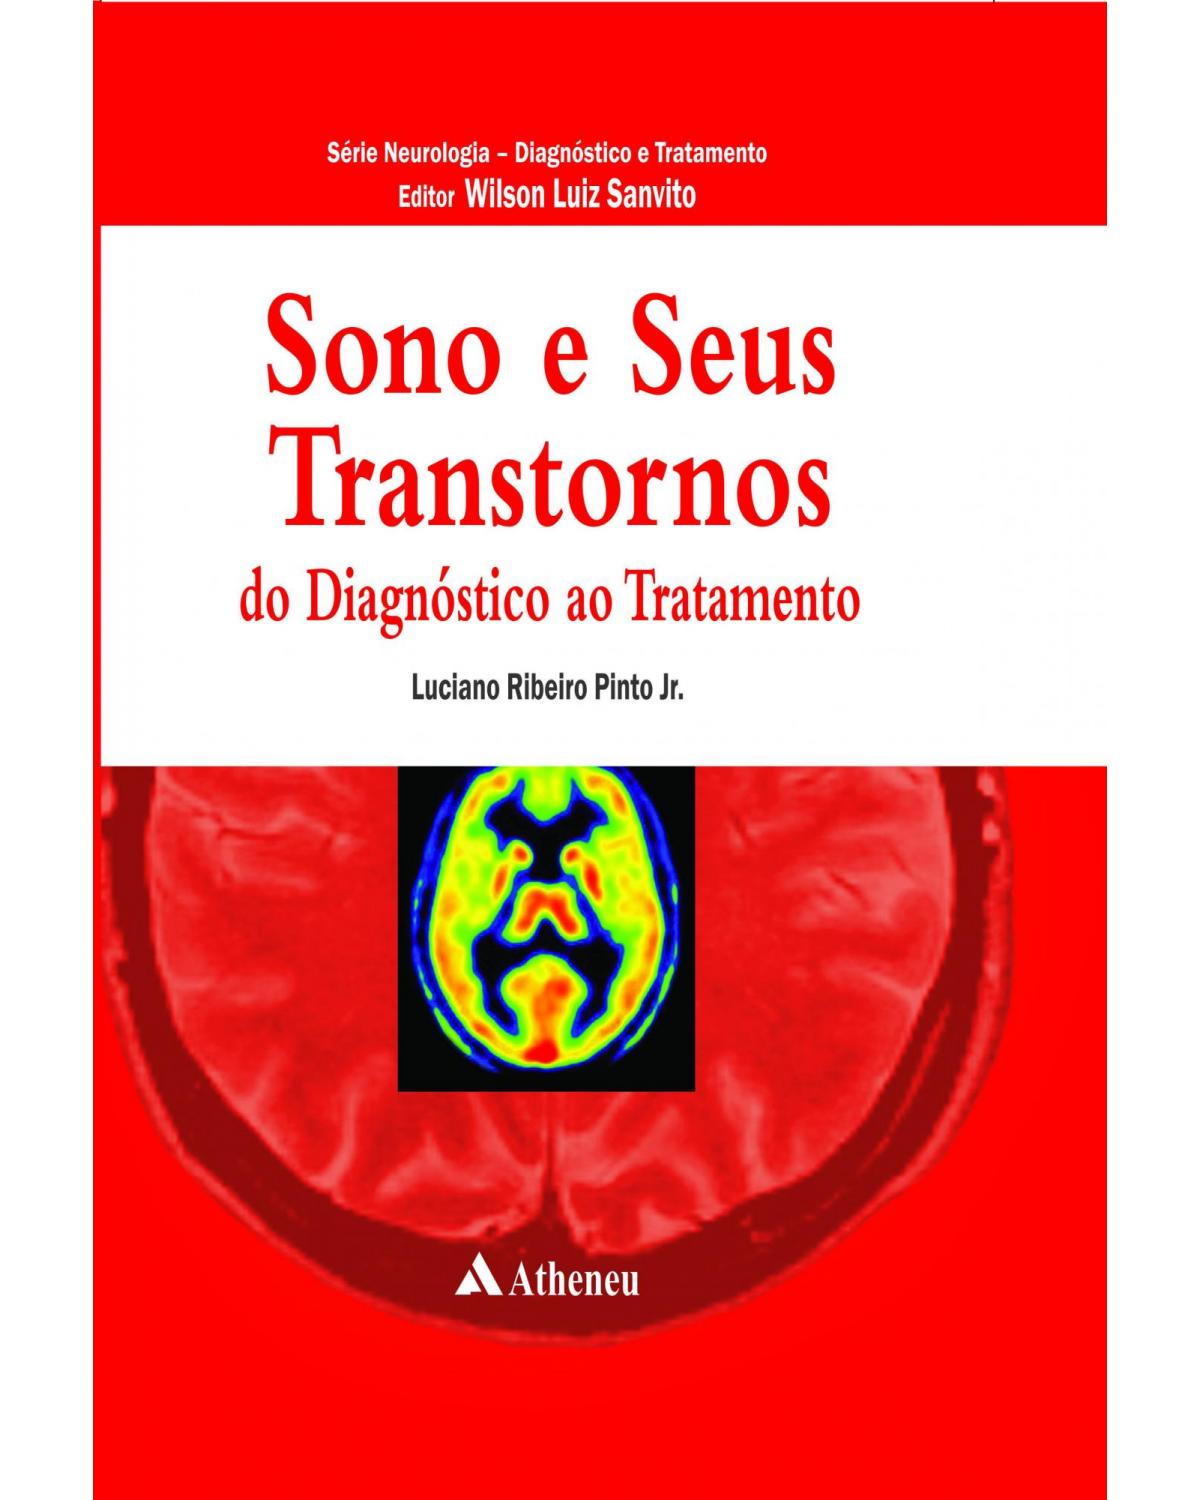 Sono e seus transtornos - do diagnóstico ao tratamento - 1ª Edição | 2012